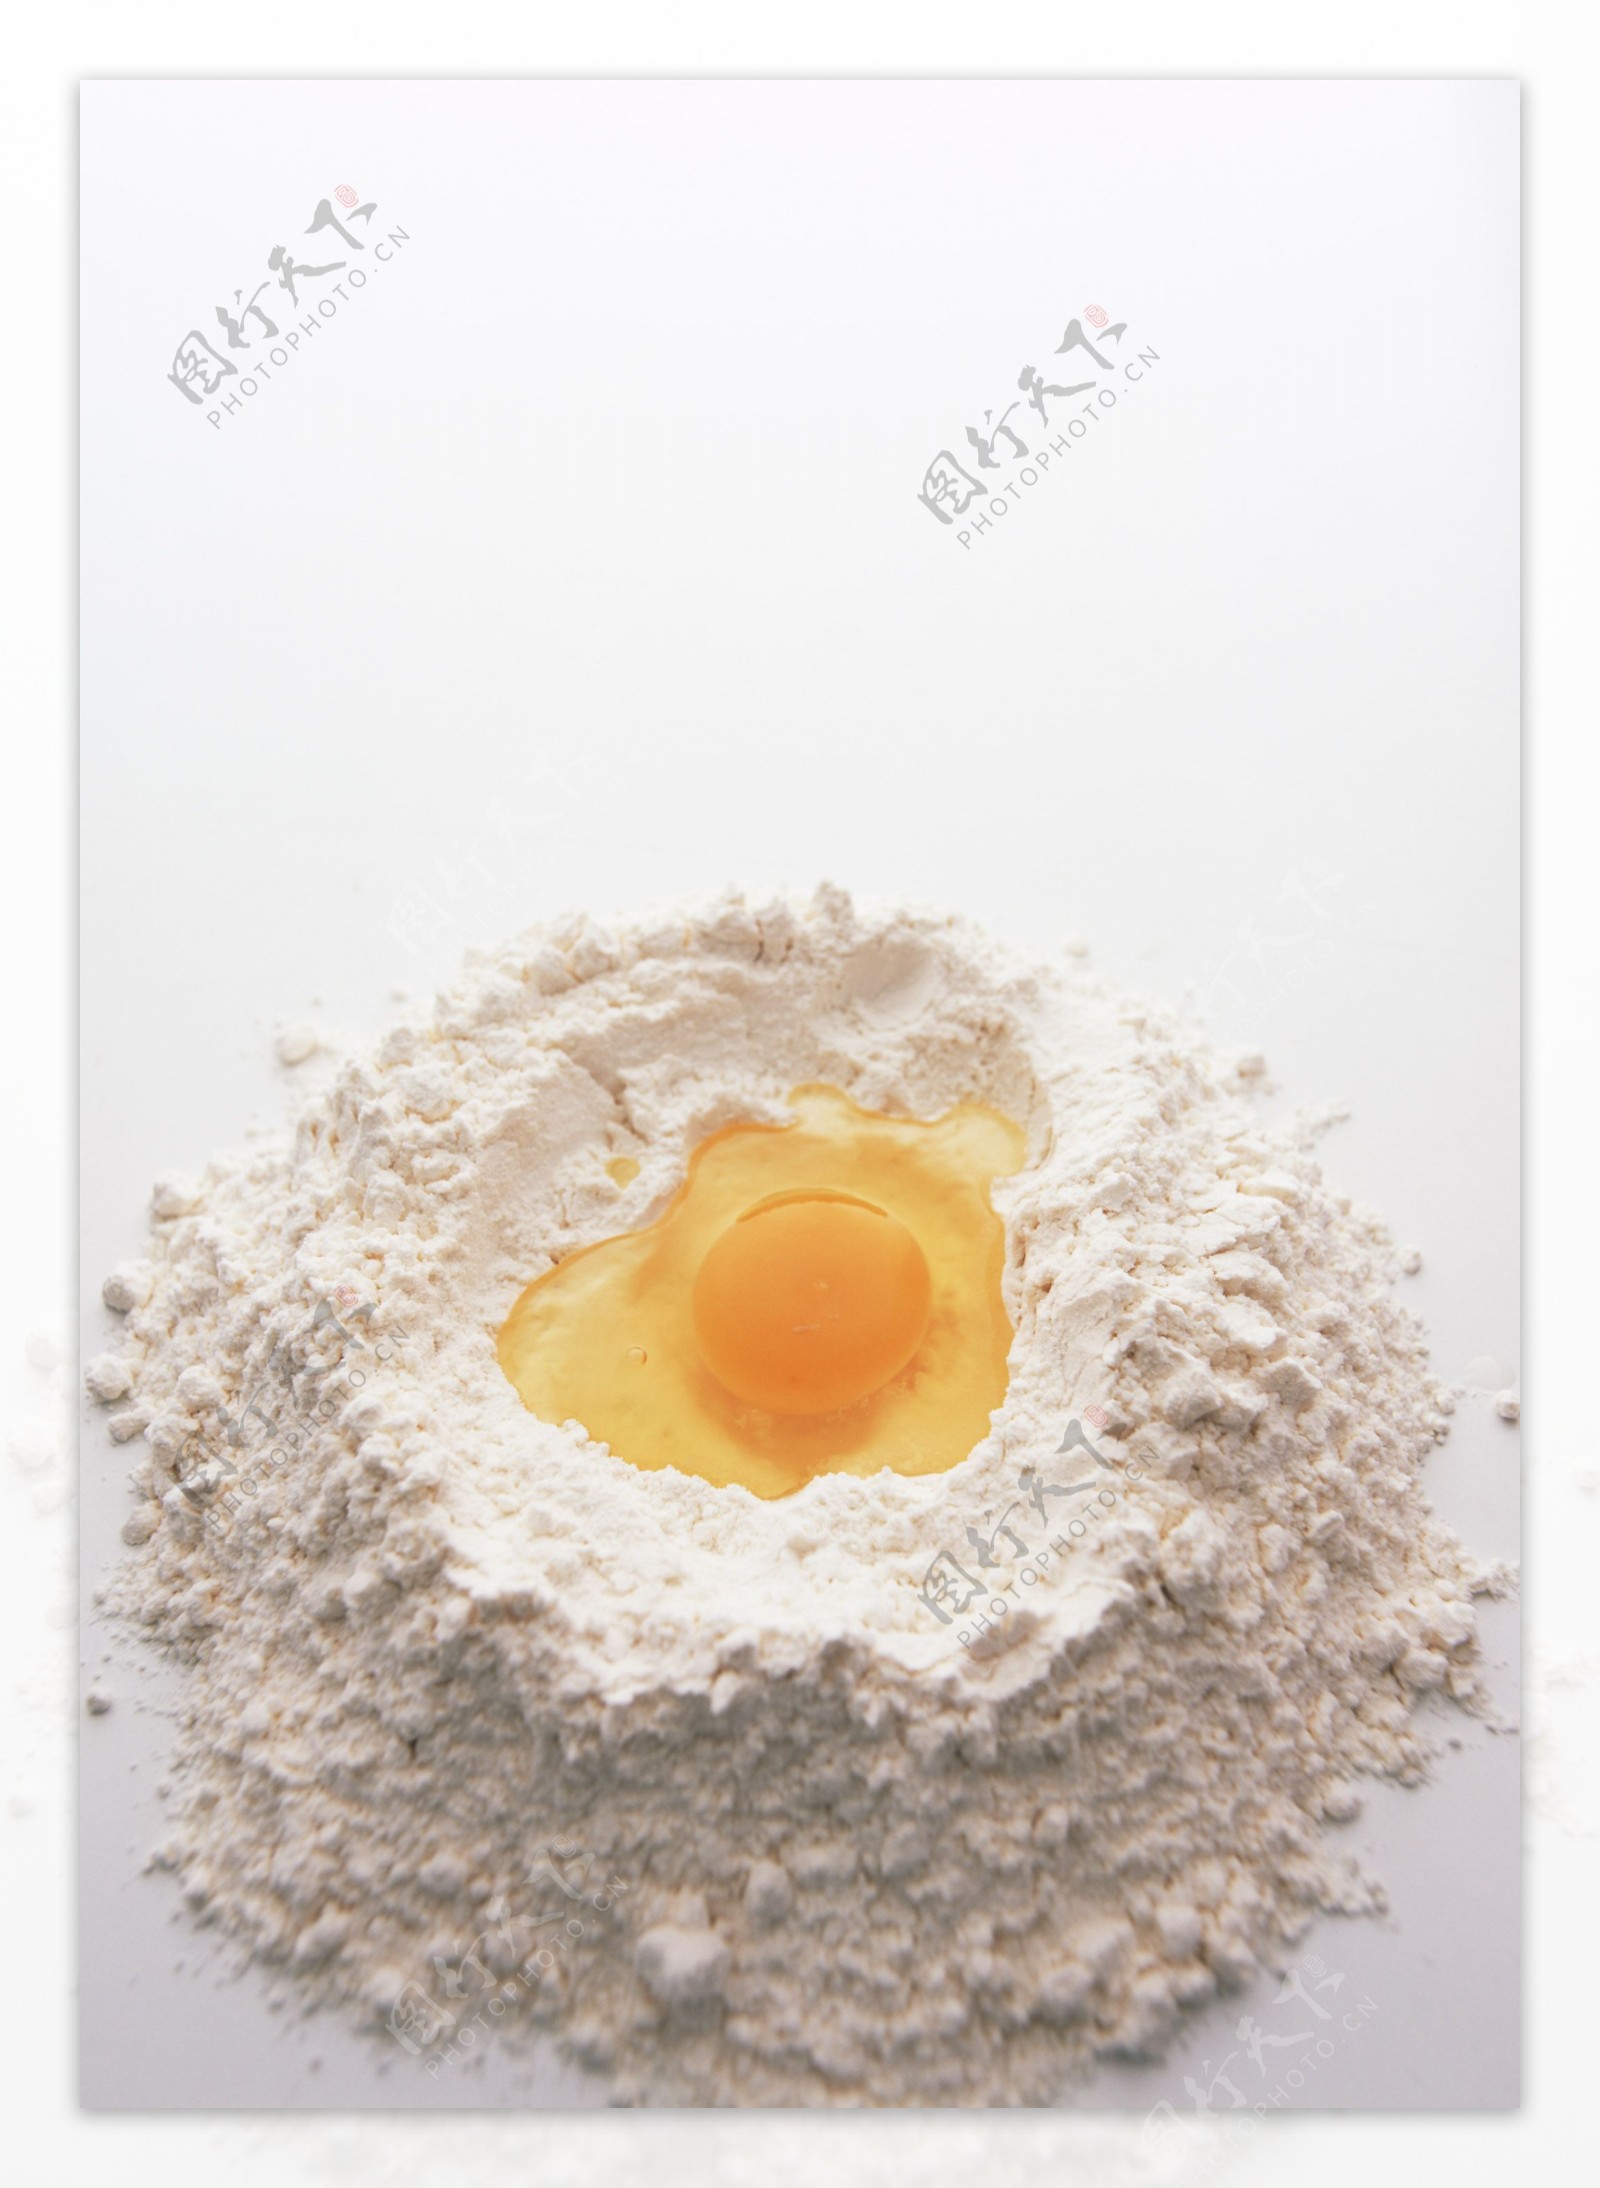 鸡蛋面粉图片大全-鸡蛋面粉高清图片下载-觅知网